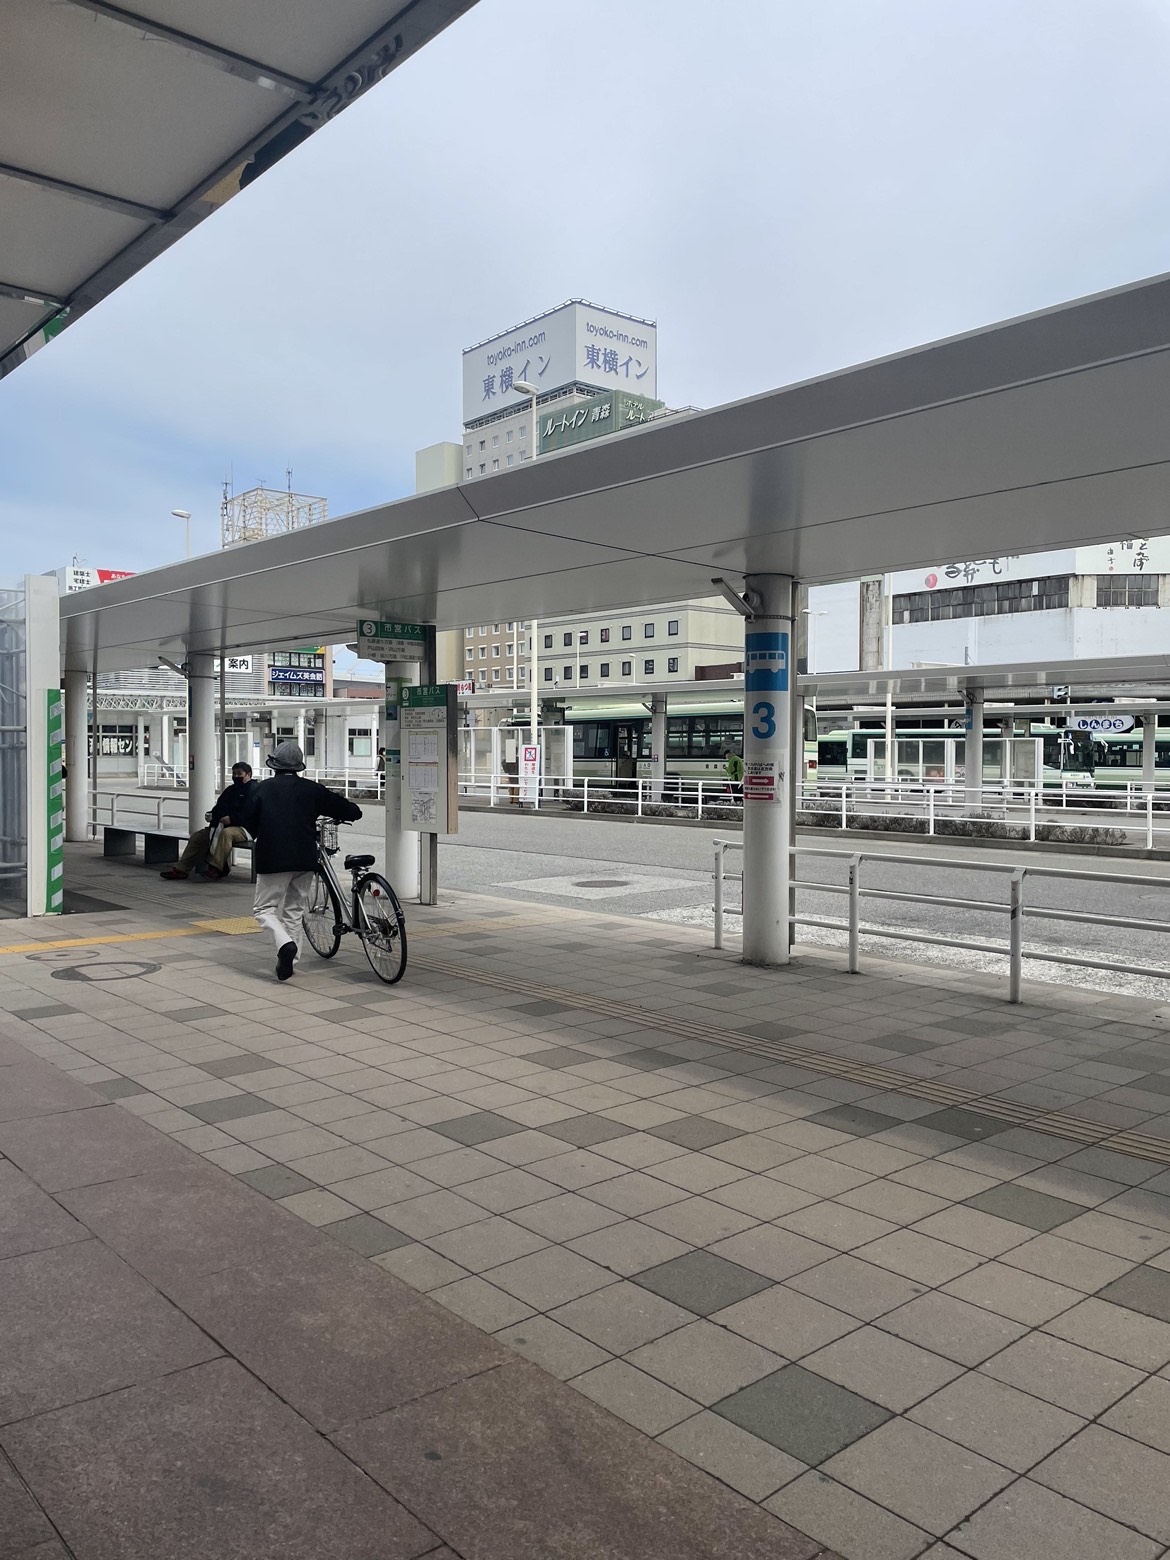 バス停「青森駅」乗り場②③④のいずれかに停まるバスへ乗車。